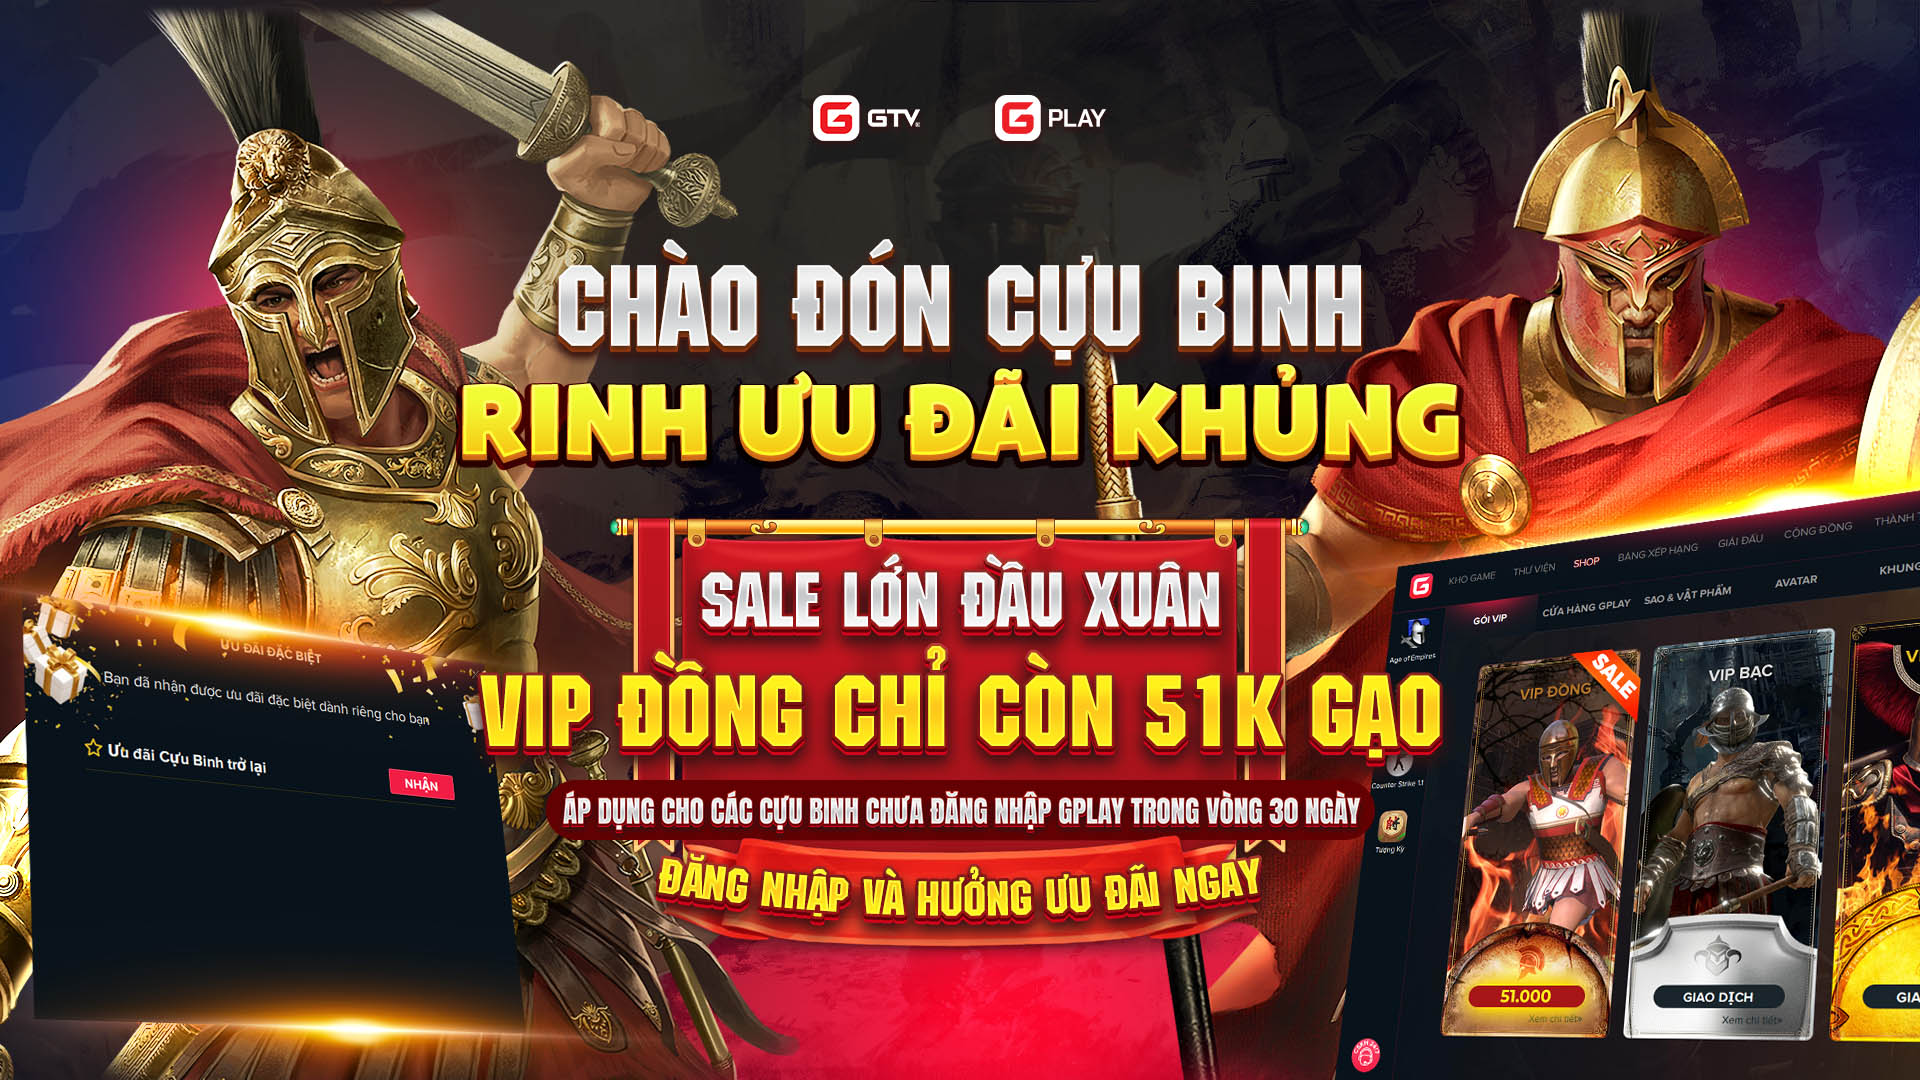 Ưu đãi đầu xuân khuân VIP giá rẻ: VIP Đồng Sale lớn chỉ còn 51k Gạo